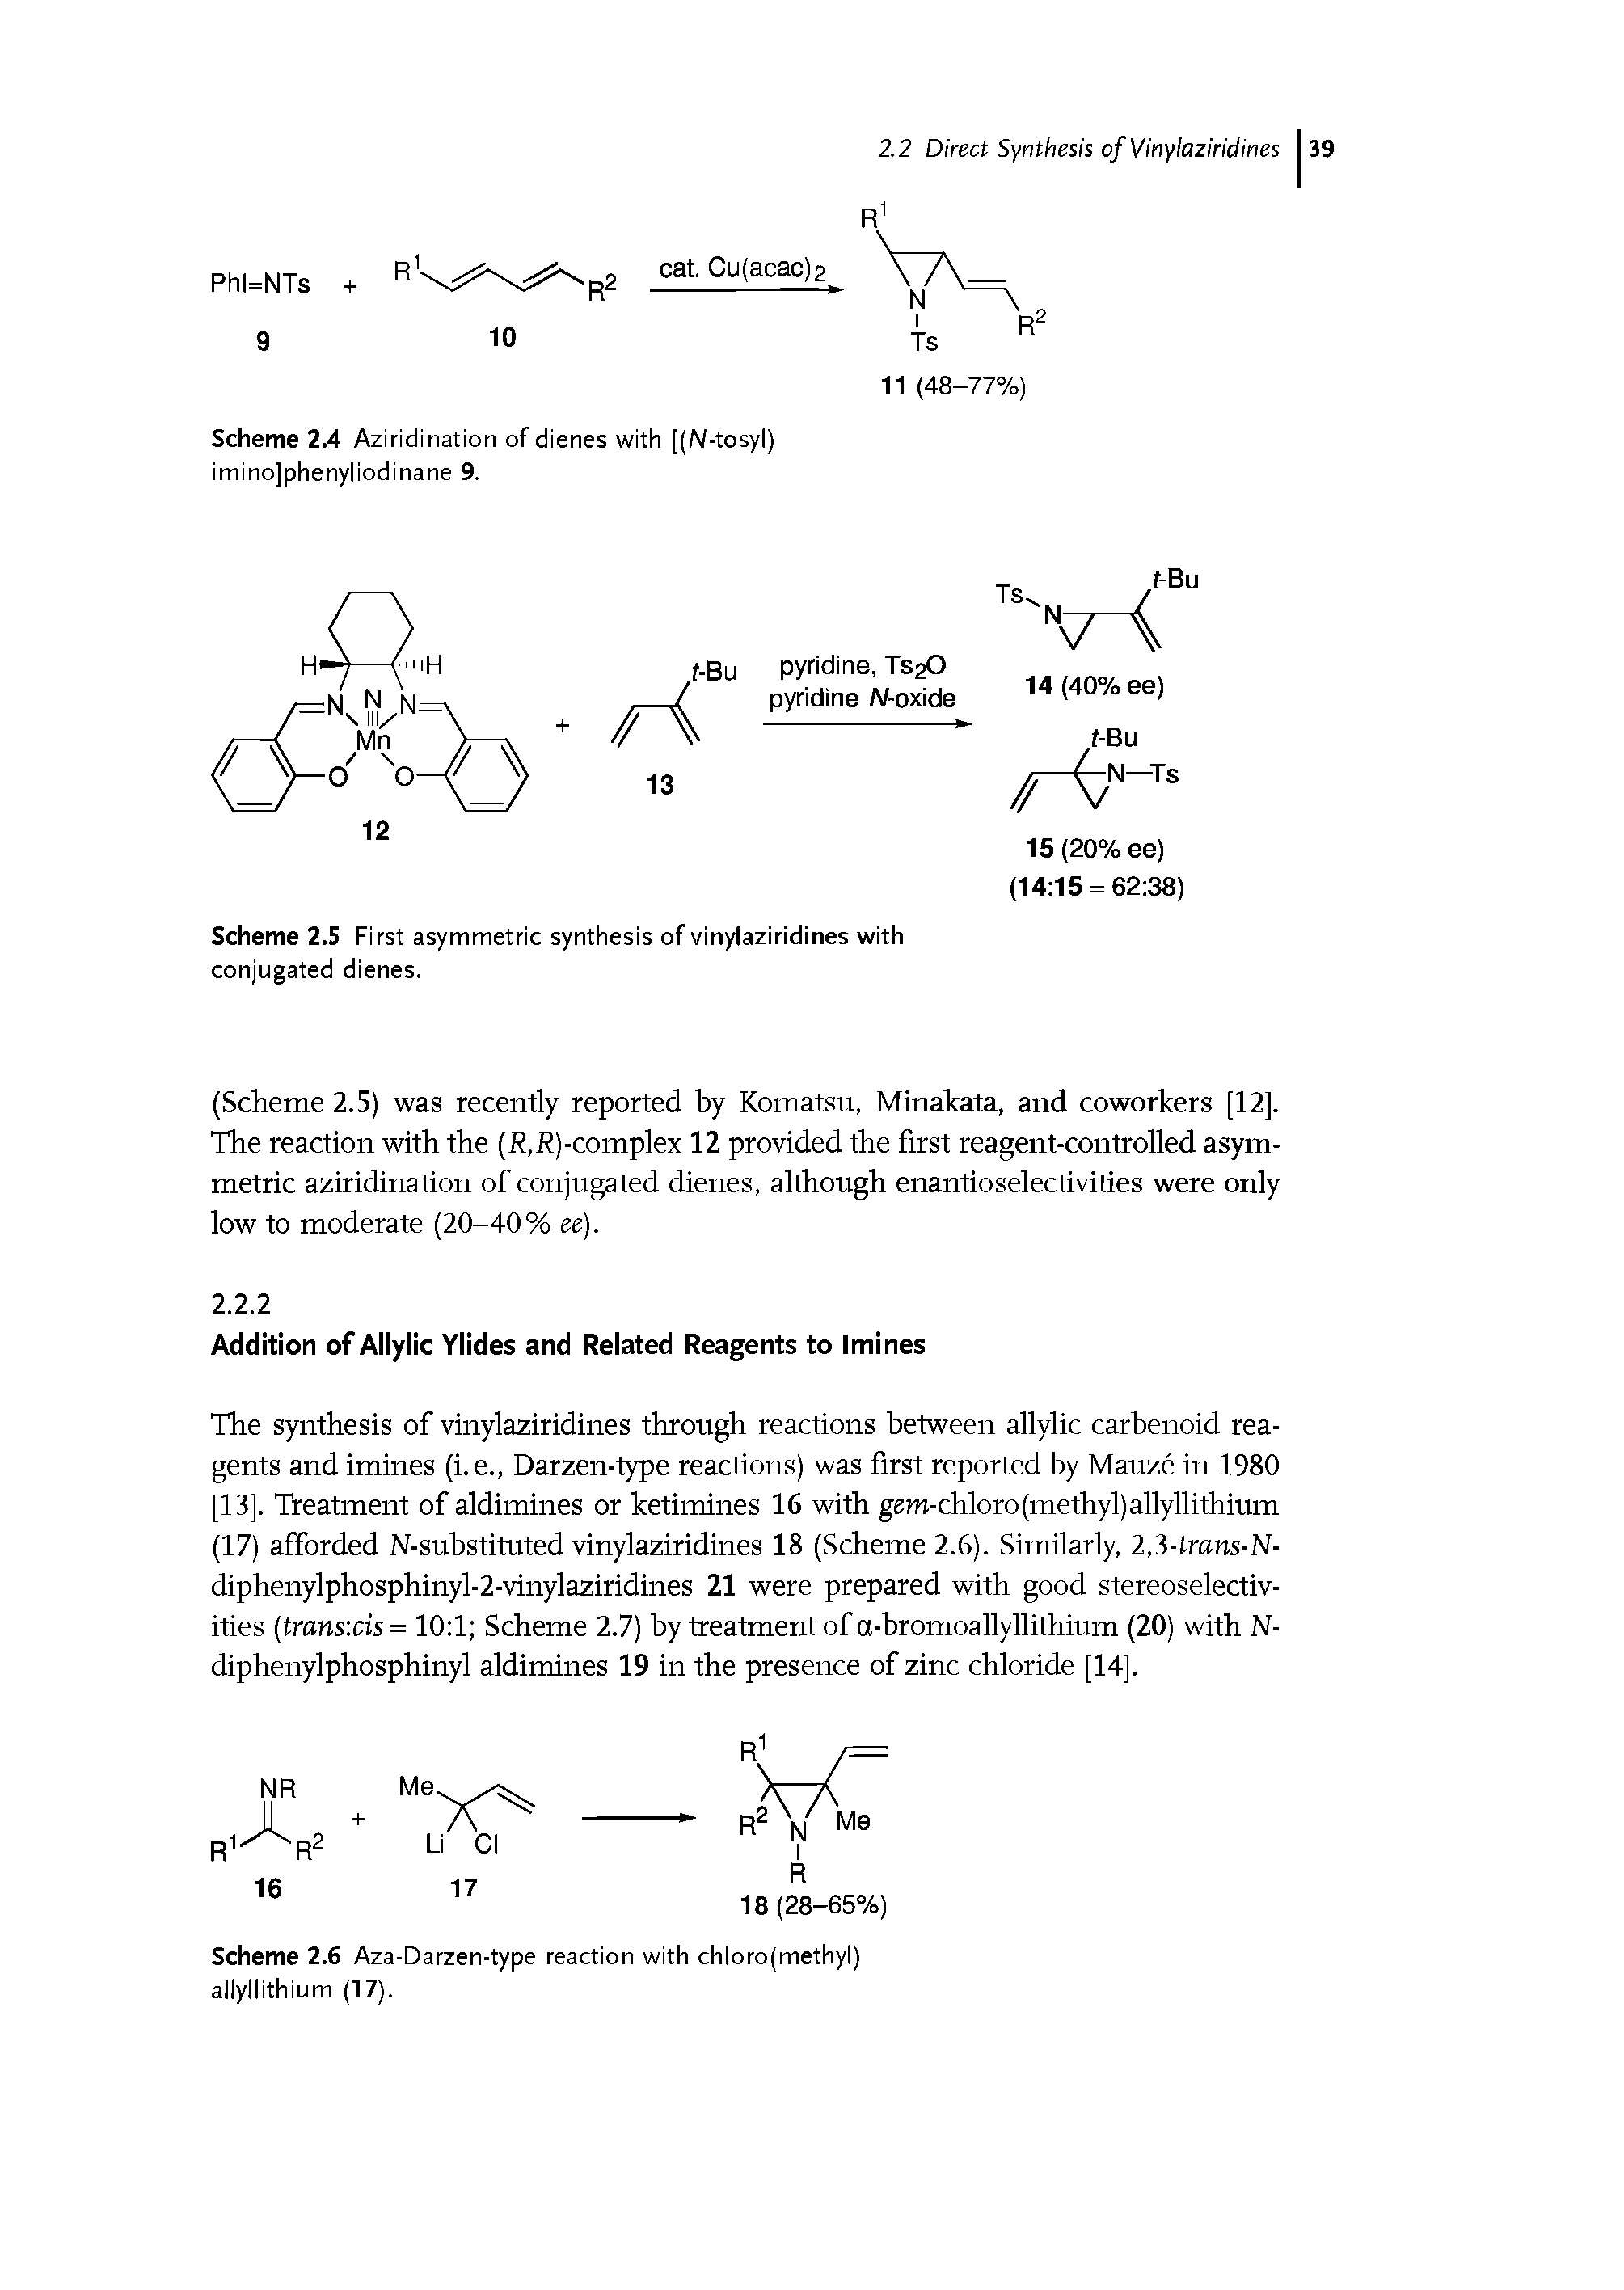 Scheme 2.4 Aziridination of dienes with [(N-tosyl) iminojphenyliodinane 9.